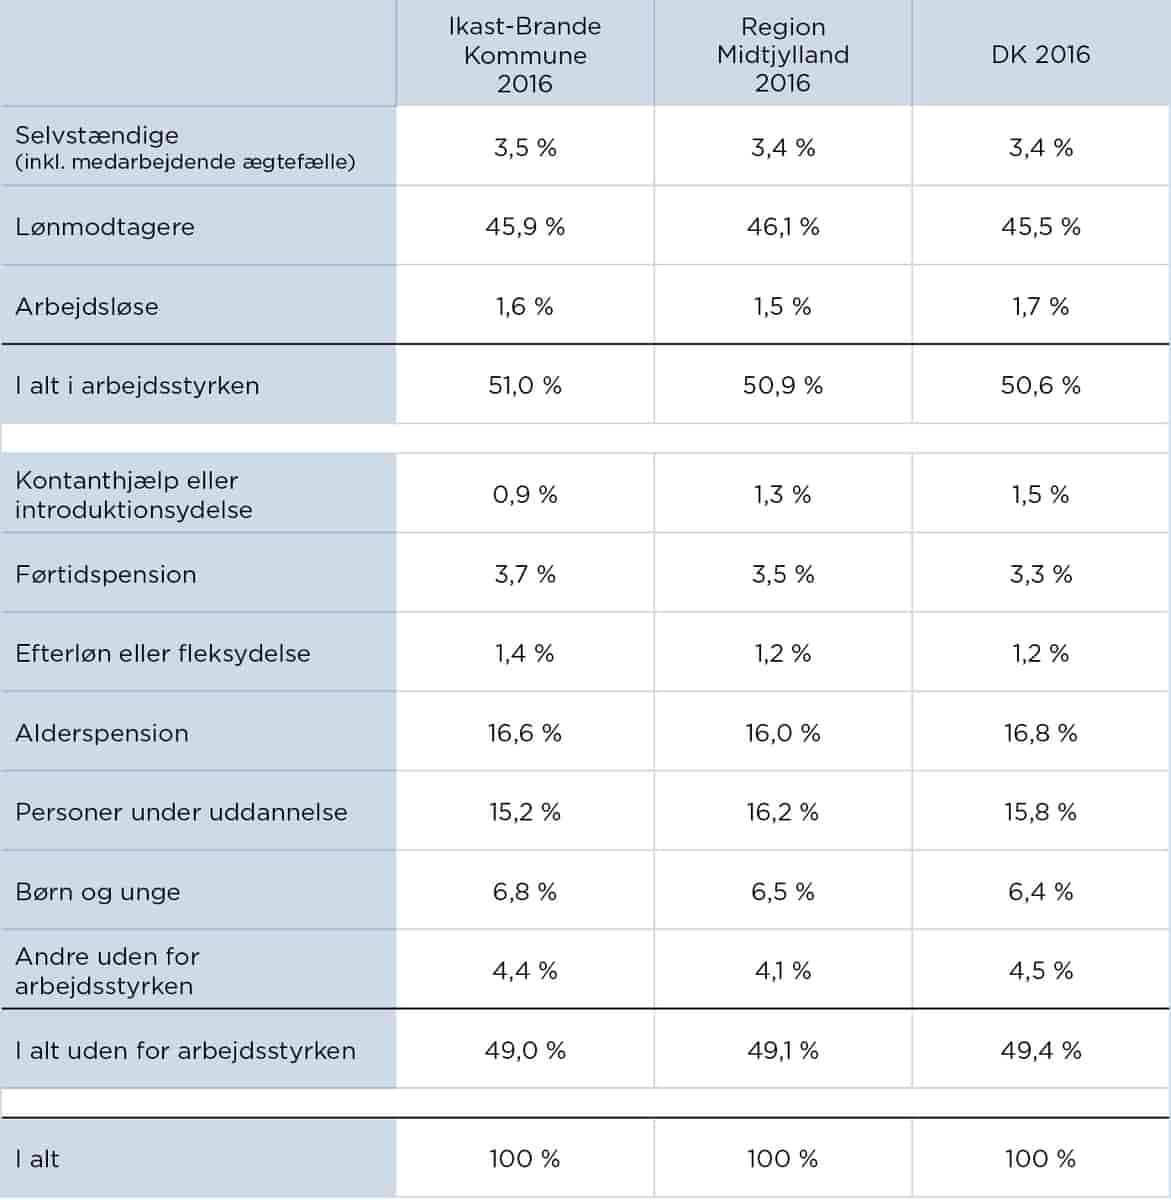 Erhverv og arbejdsmarked Ikast-Brande Kommune | lex.dk – Danmark